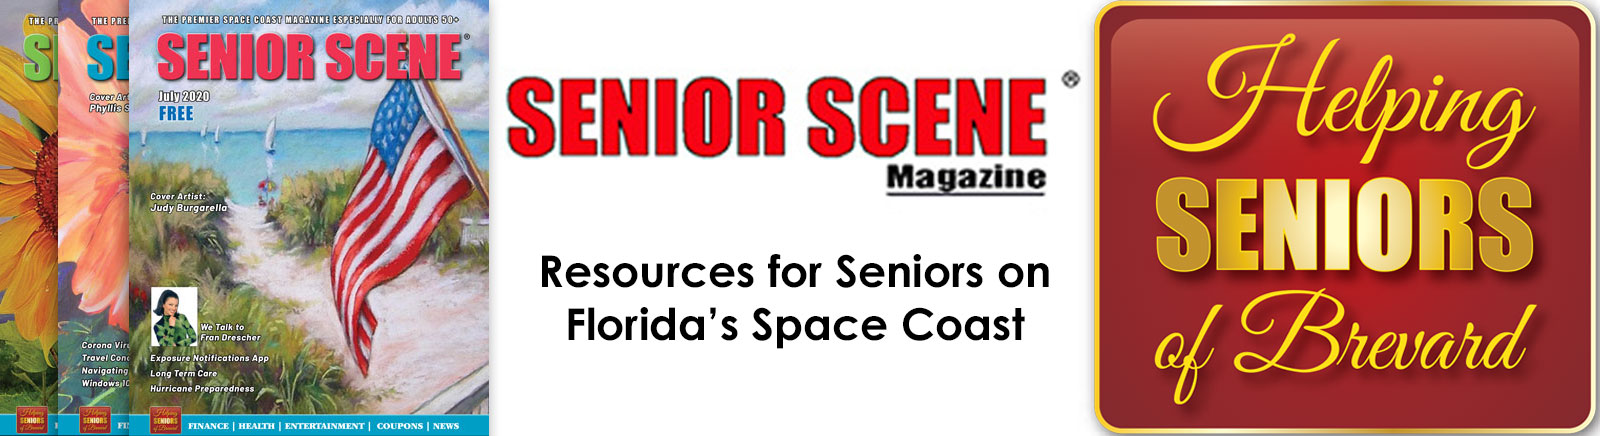 Helping Seniors & Senior Scene